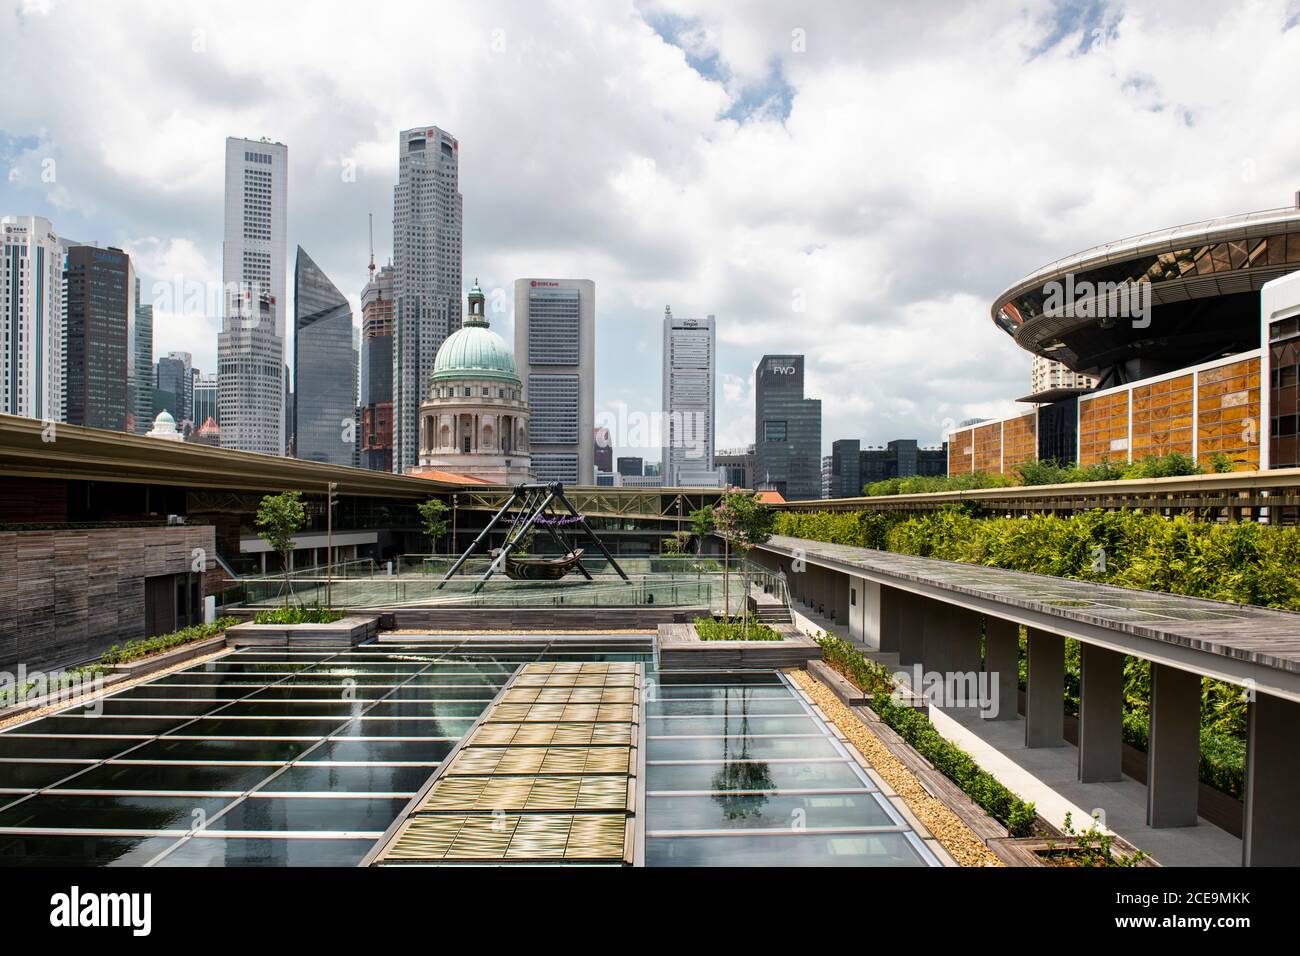 Singapur, Singapur: 07. März 2020. National Gallery Singapur Dachterrasse öffentlichen Raum mit Blick auf den Old Supreme Court Flügel (Kuppel) und Singapur Acad Stockfoto